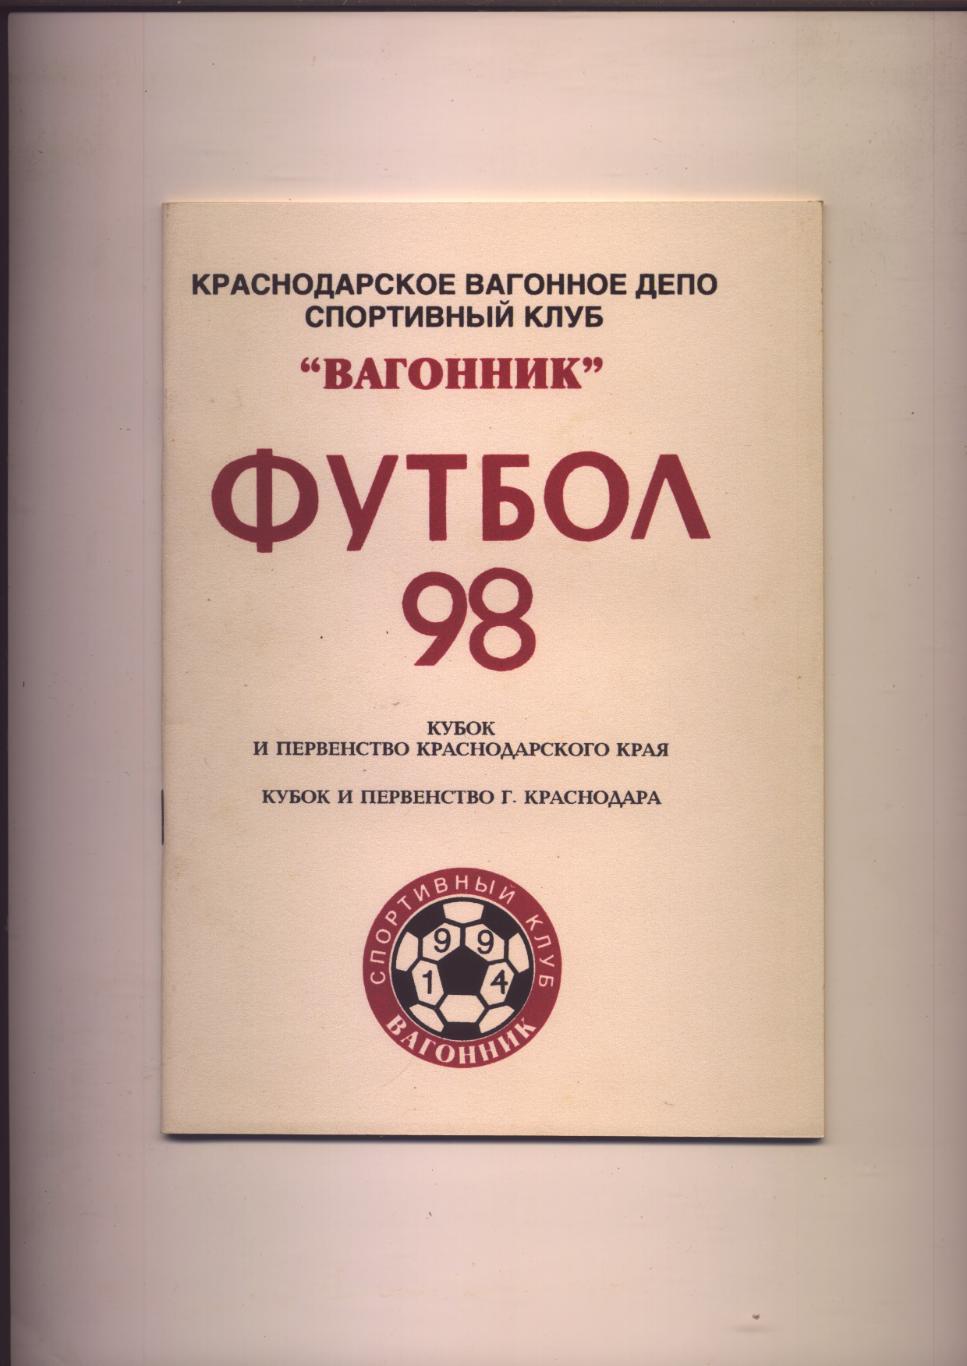 Футбол-98 Вагонник Краснодар История статистика фото 1994-1998 гг 48 стр.